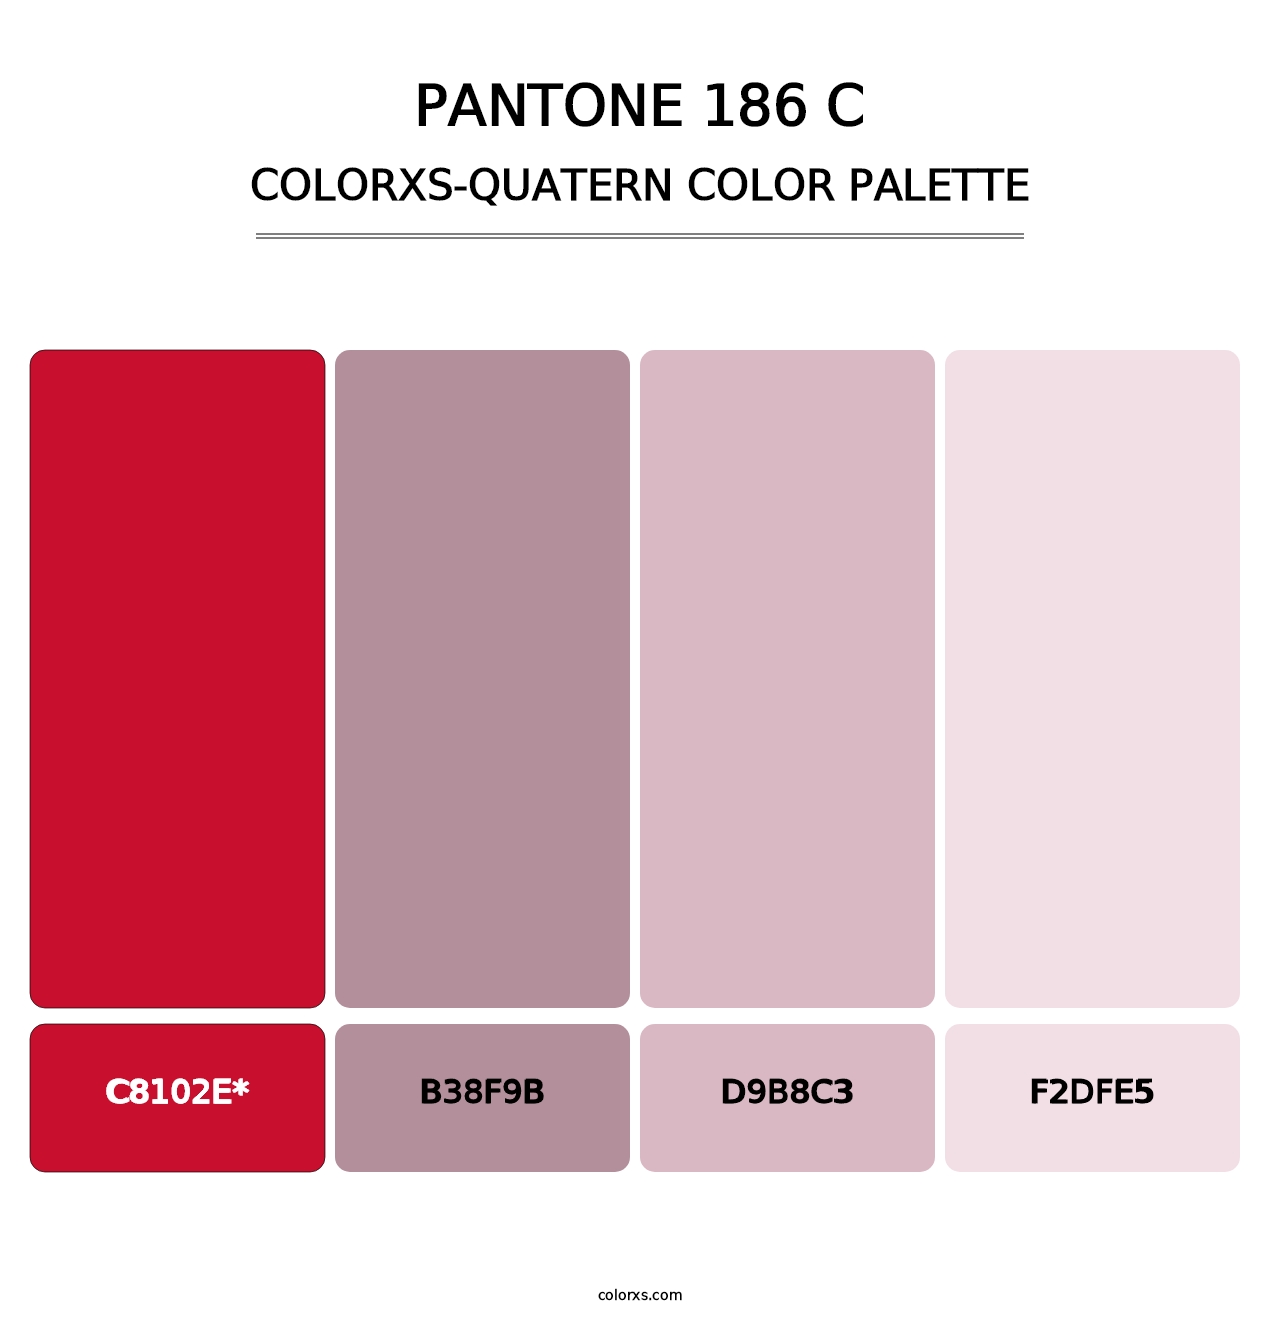 PANTONE 186 C - Colorxs Quatern Palette